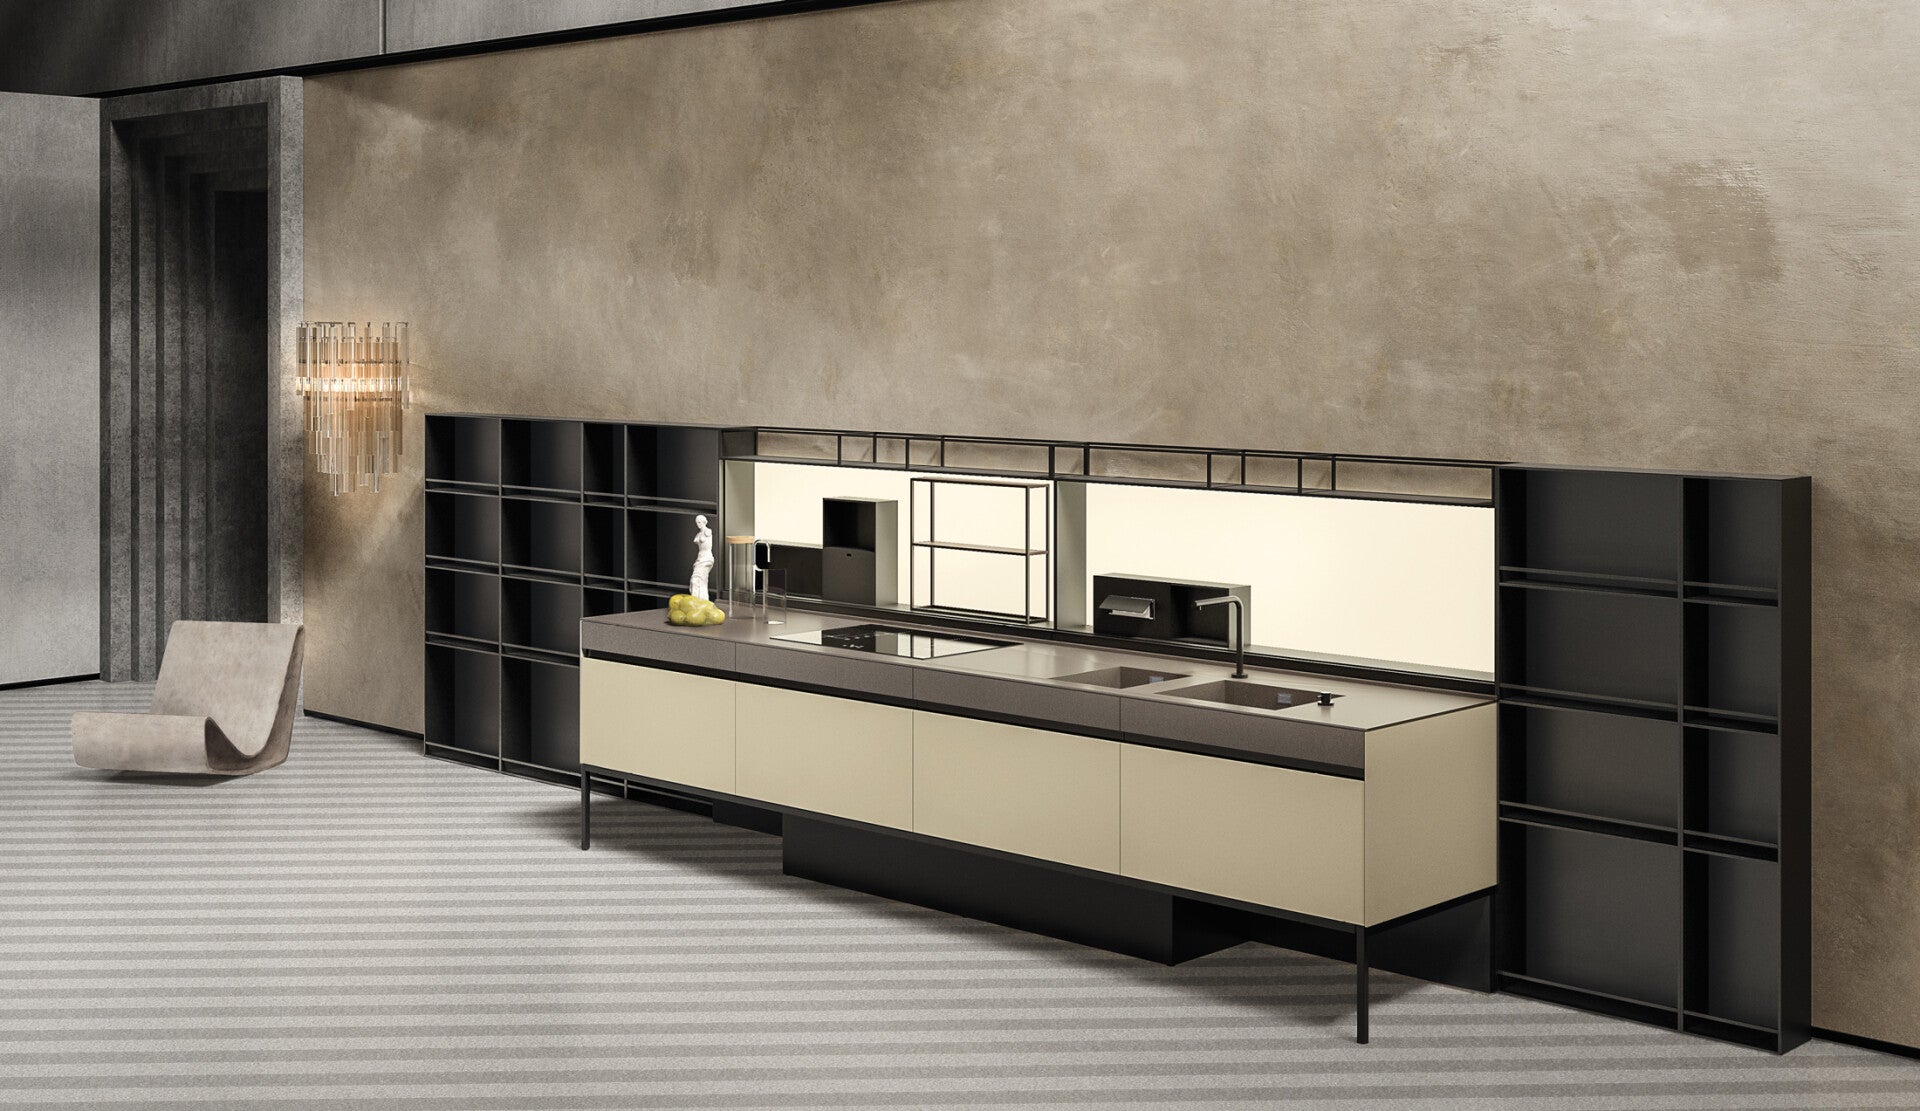 Euromobil Cucina SEI Tomasi Design shop arredo di design di lusso